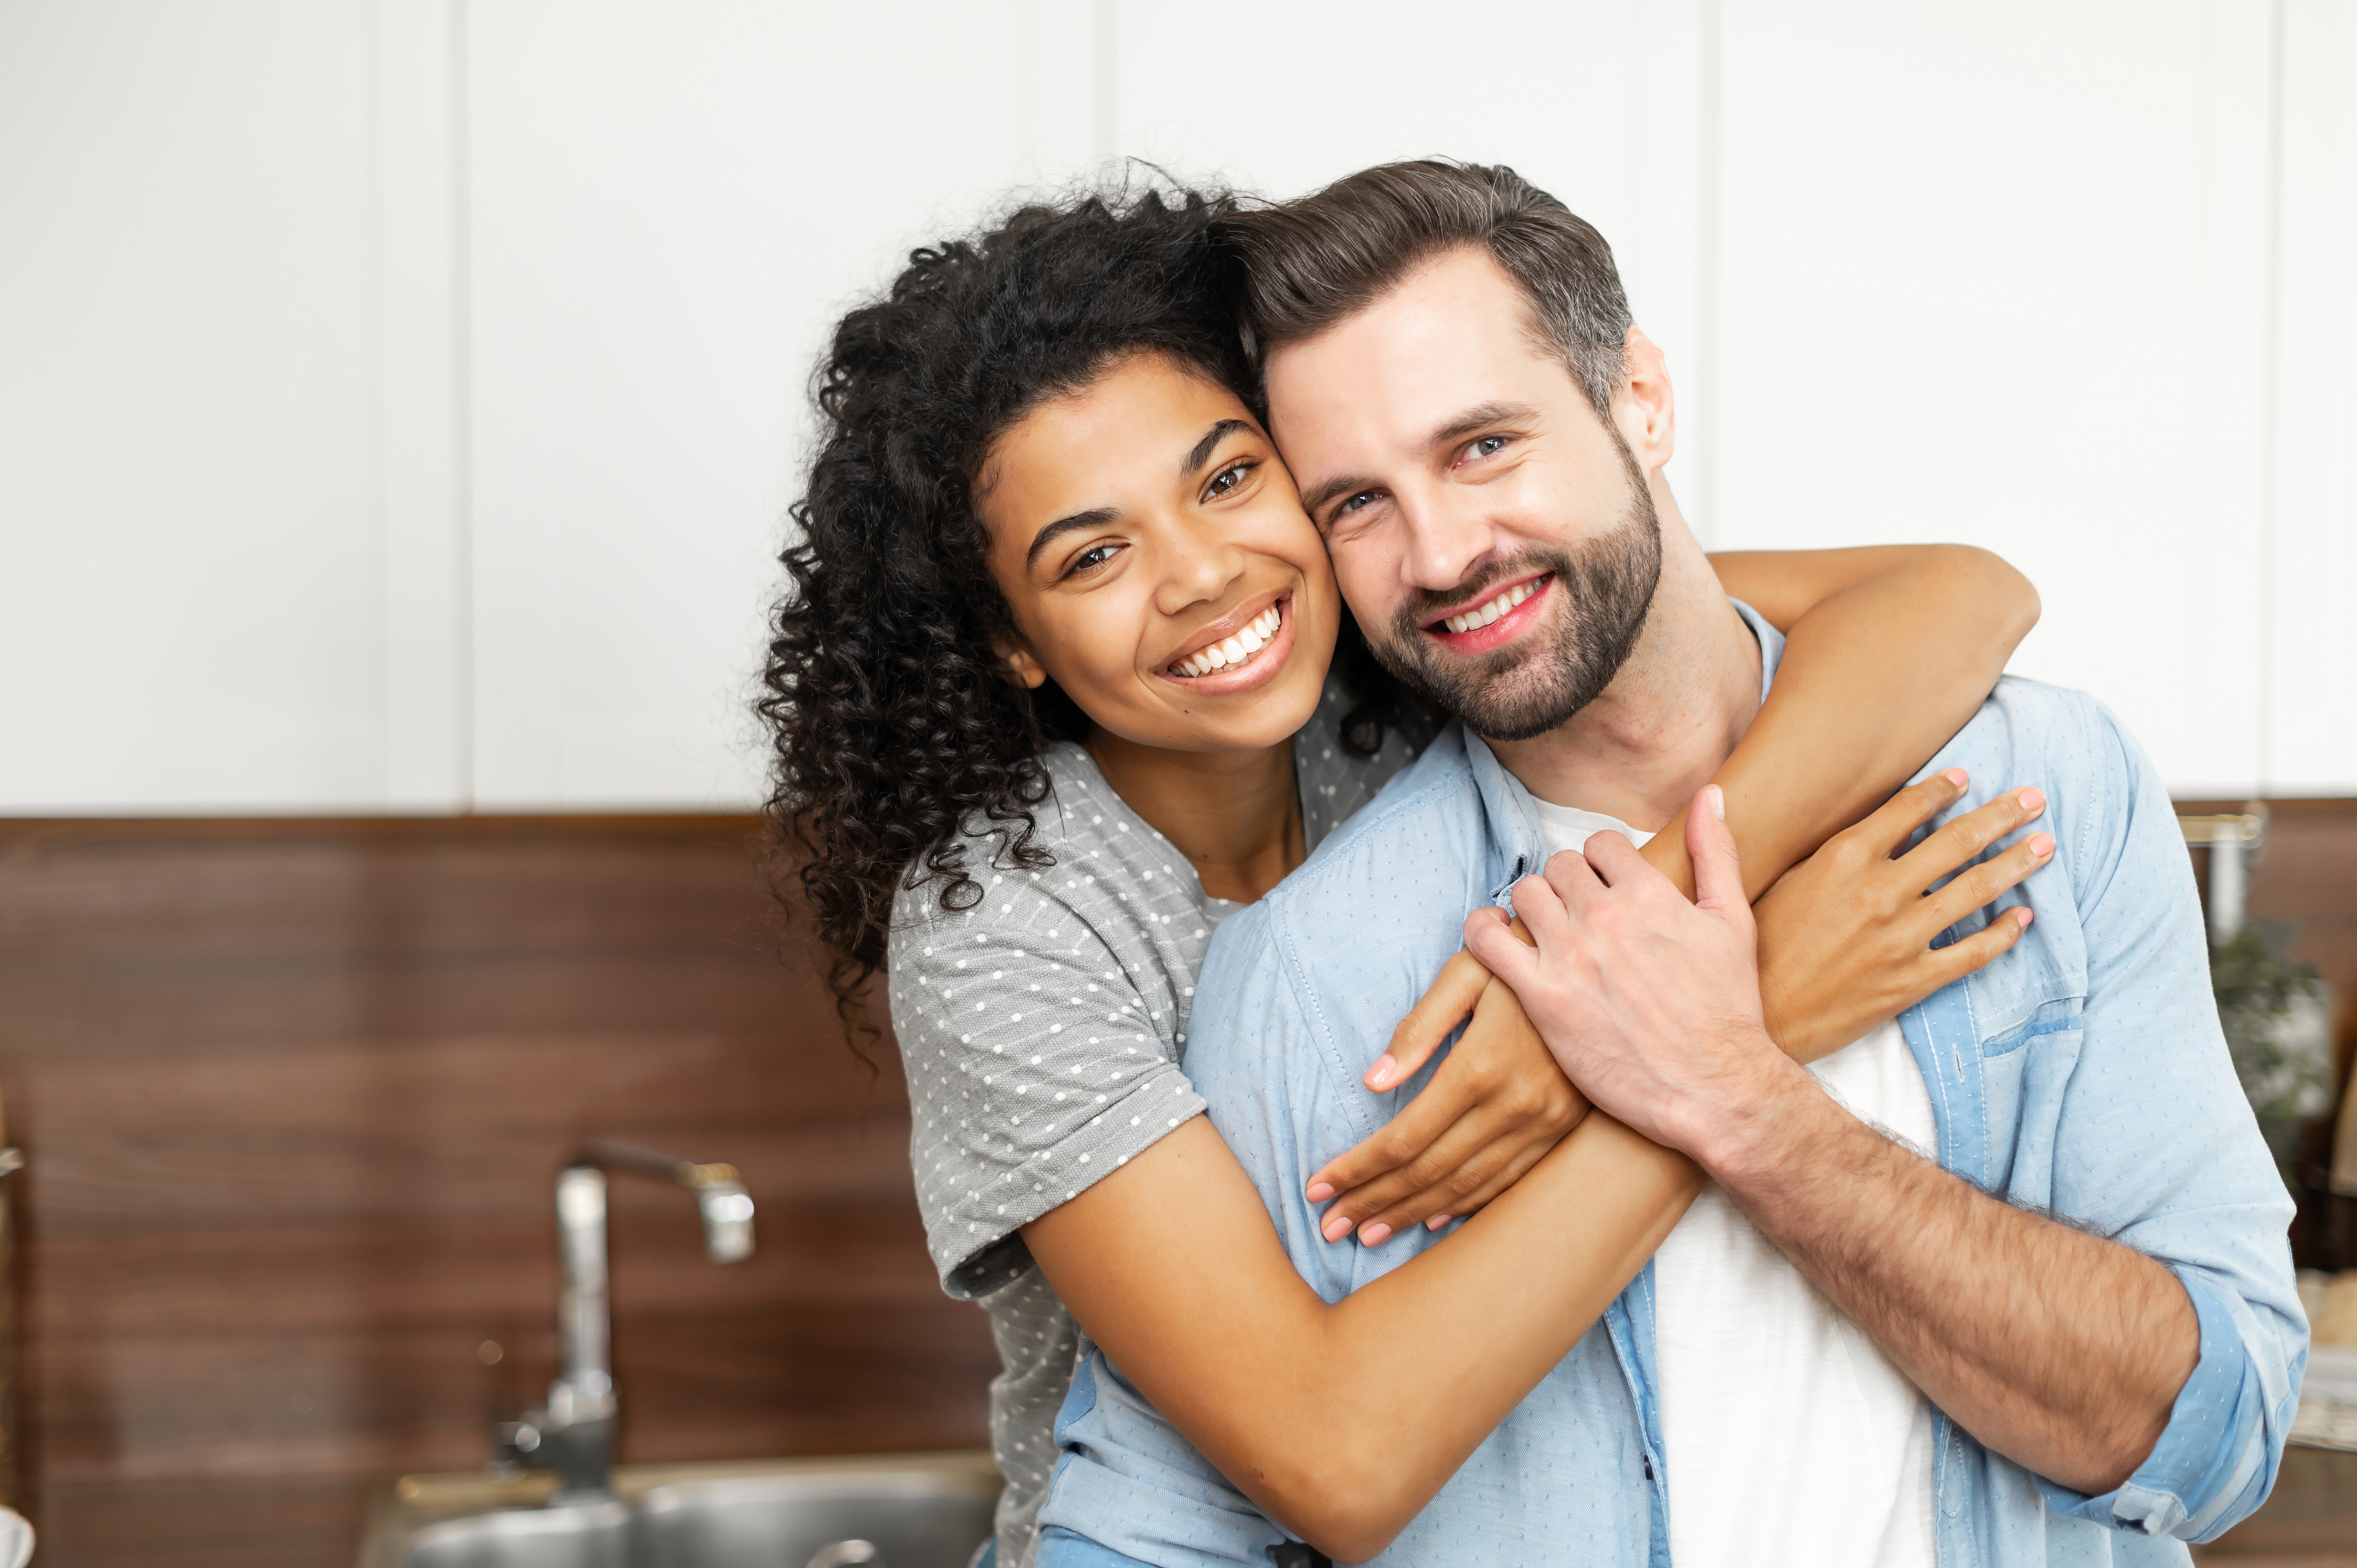 Un couple interracial heureux s'embrassant dans sa maison | Source : Shutterstock